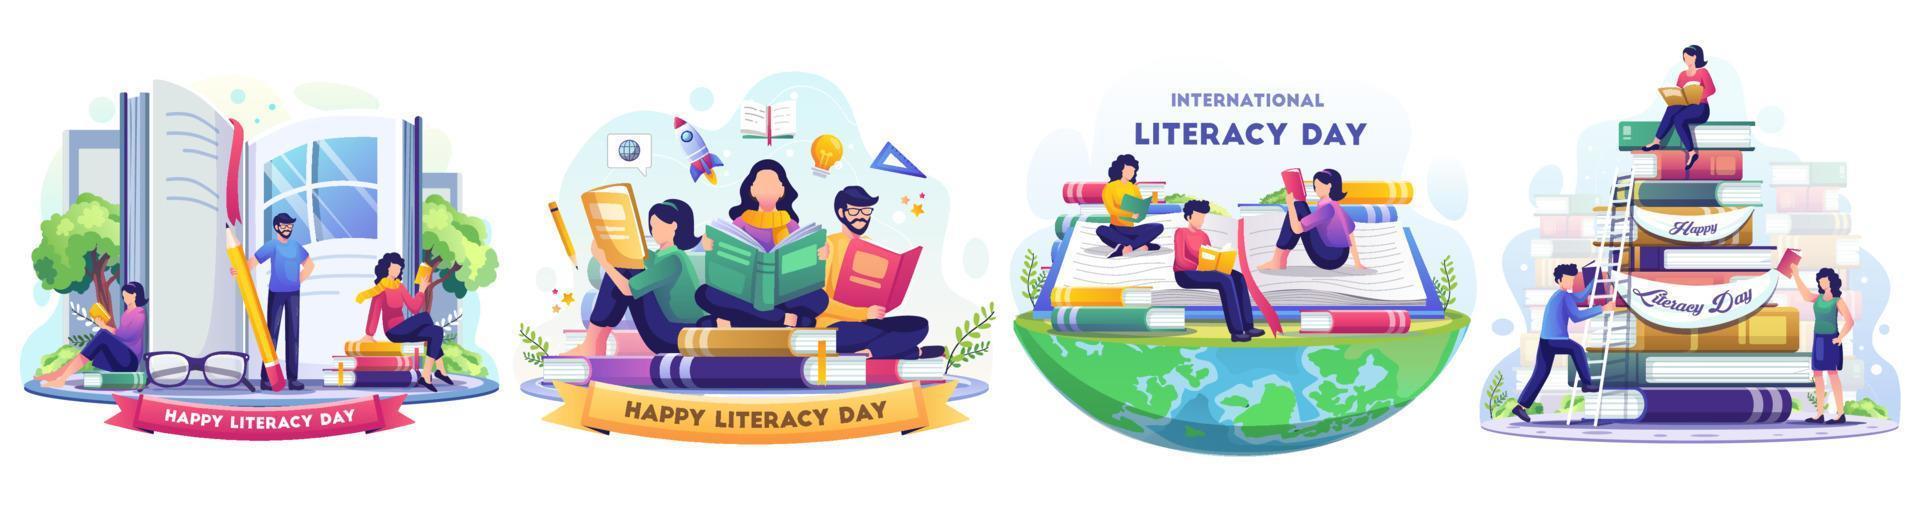 ensemble de concept de journée internationale de l'alphabétisation avec des gens célèbrent la journée de l'alphabétisation en lisant des livres. illustration vectorielle de style plat vecteur